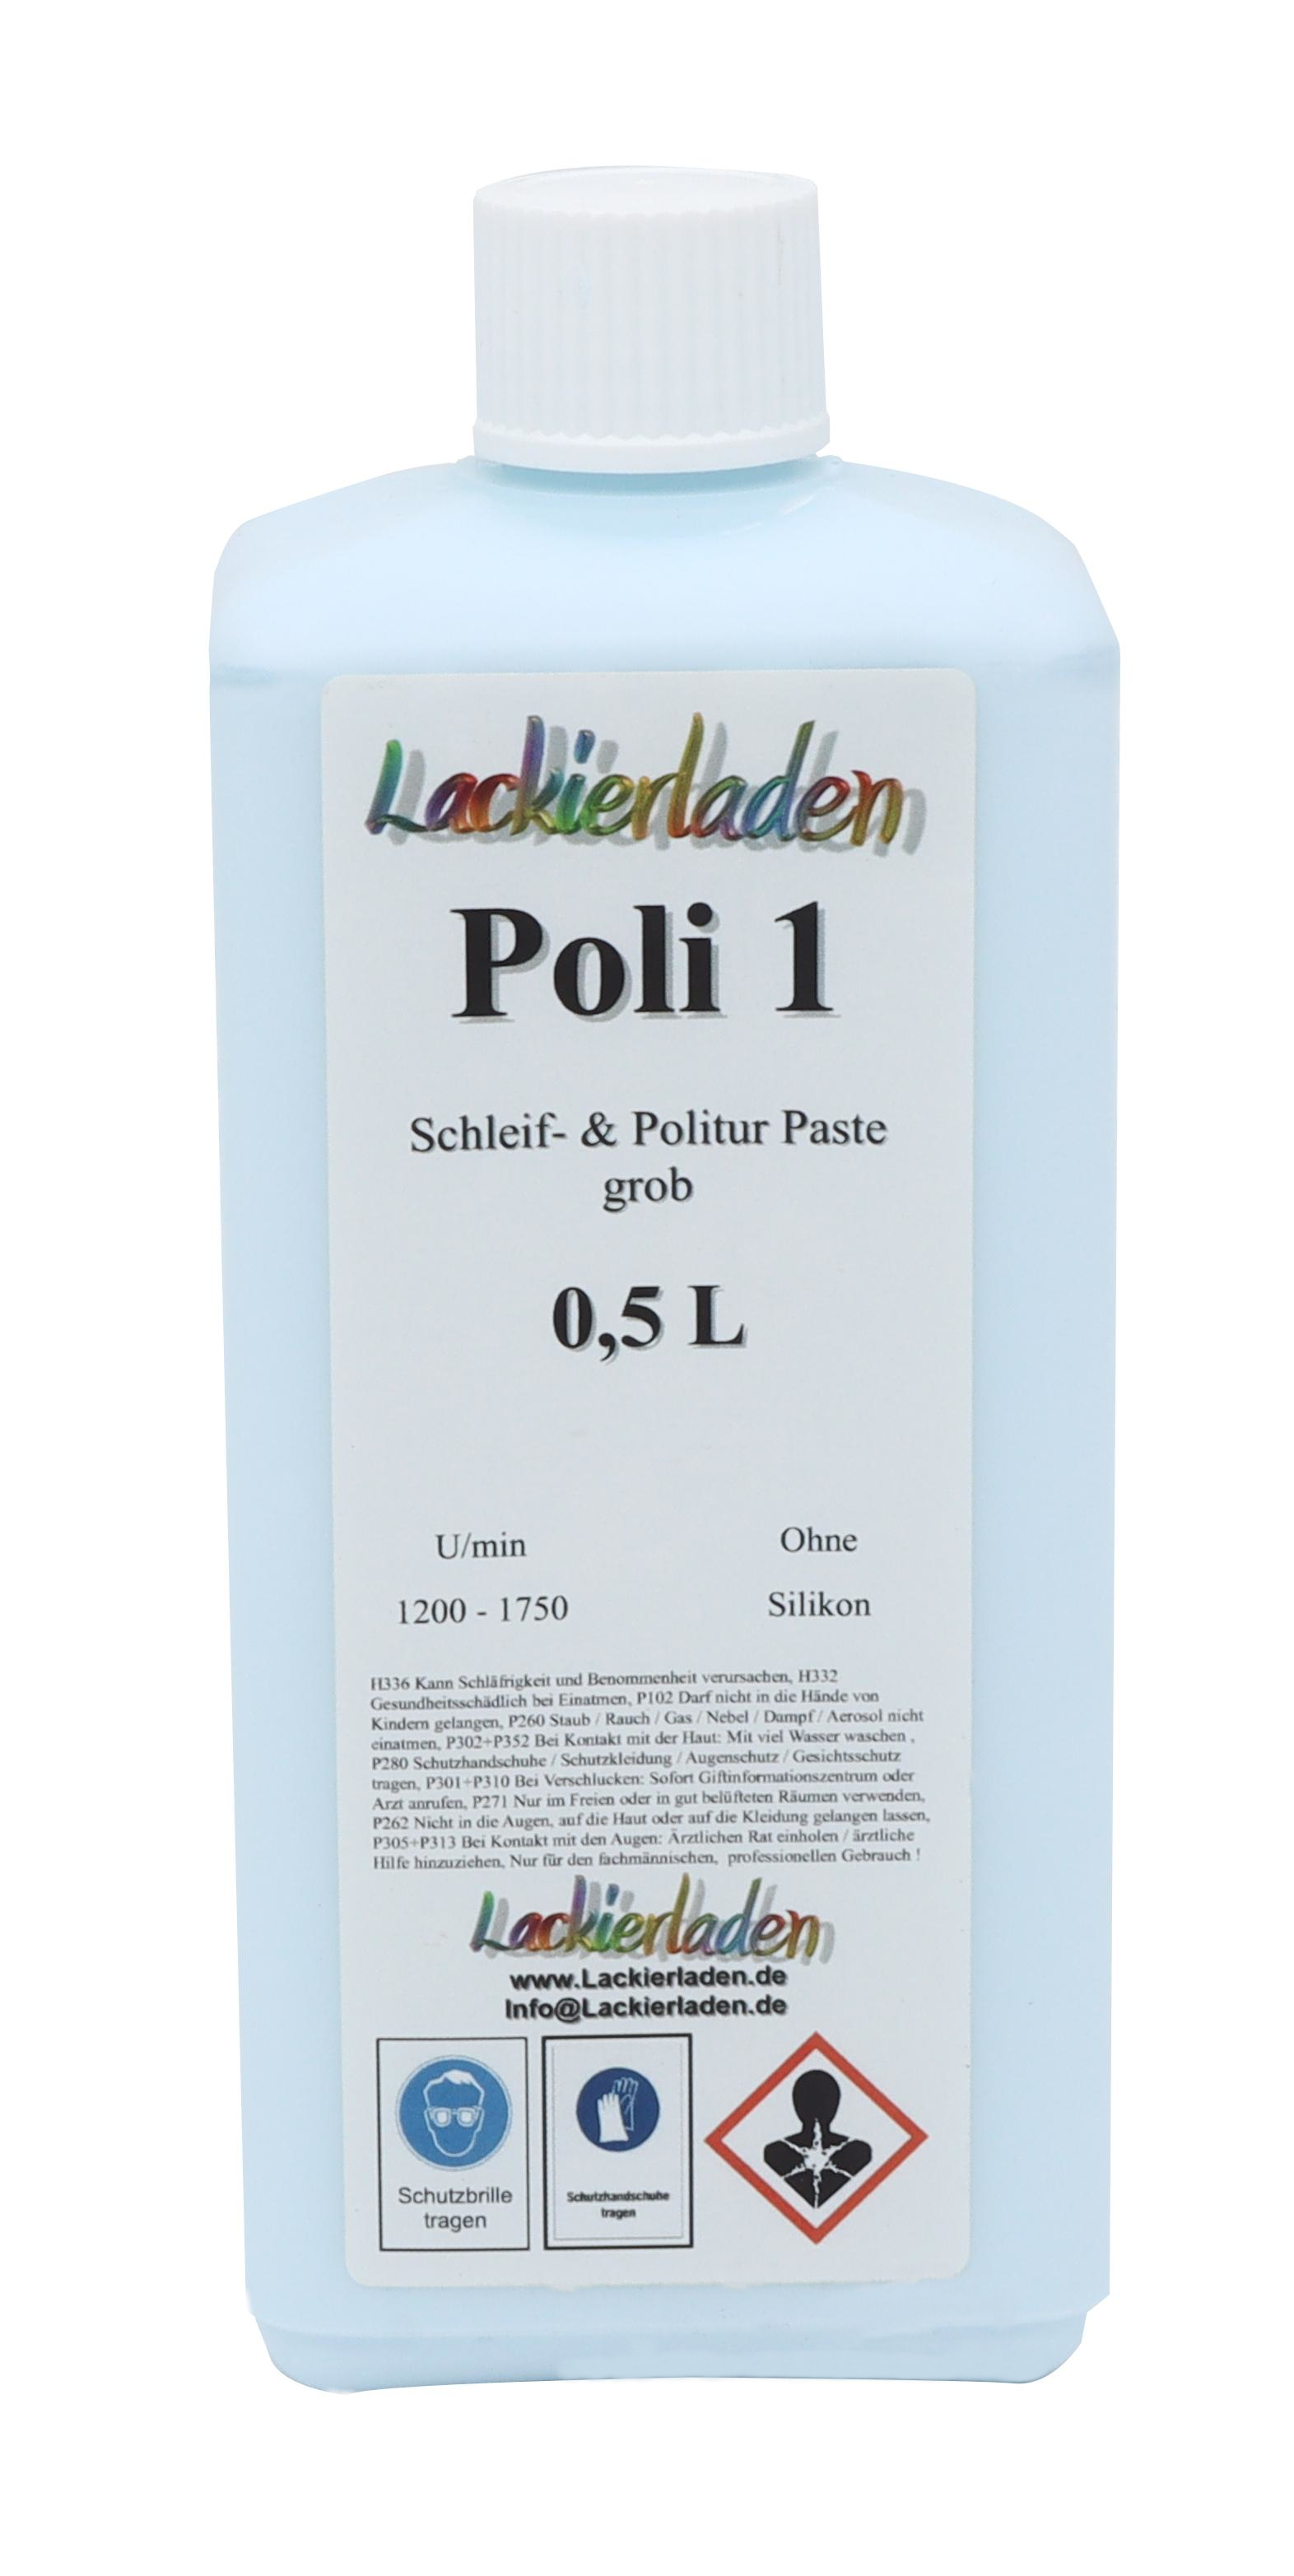 Poli 1 Schleif- & Politur Paste grob 0,5 L | Polierpaste Schleifpaste polieren